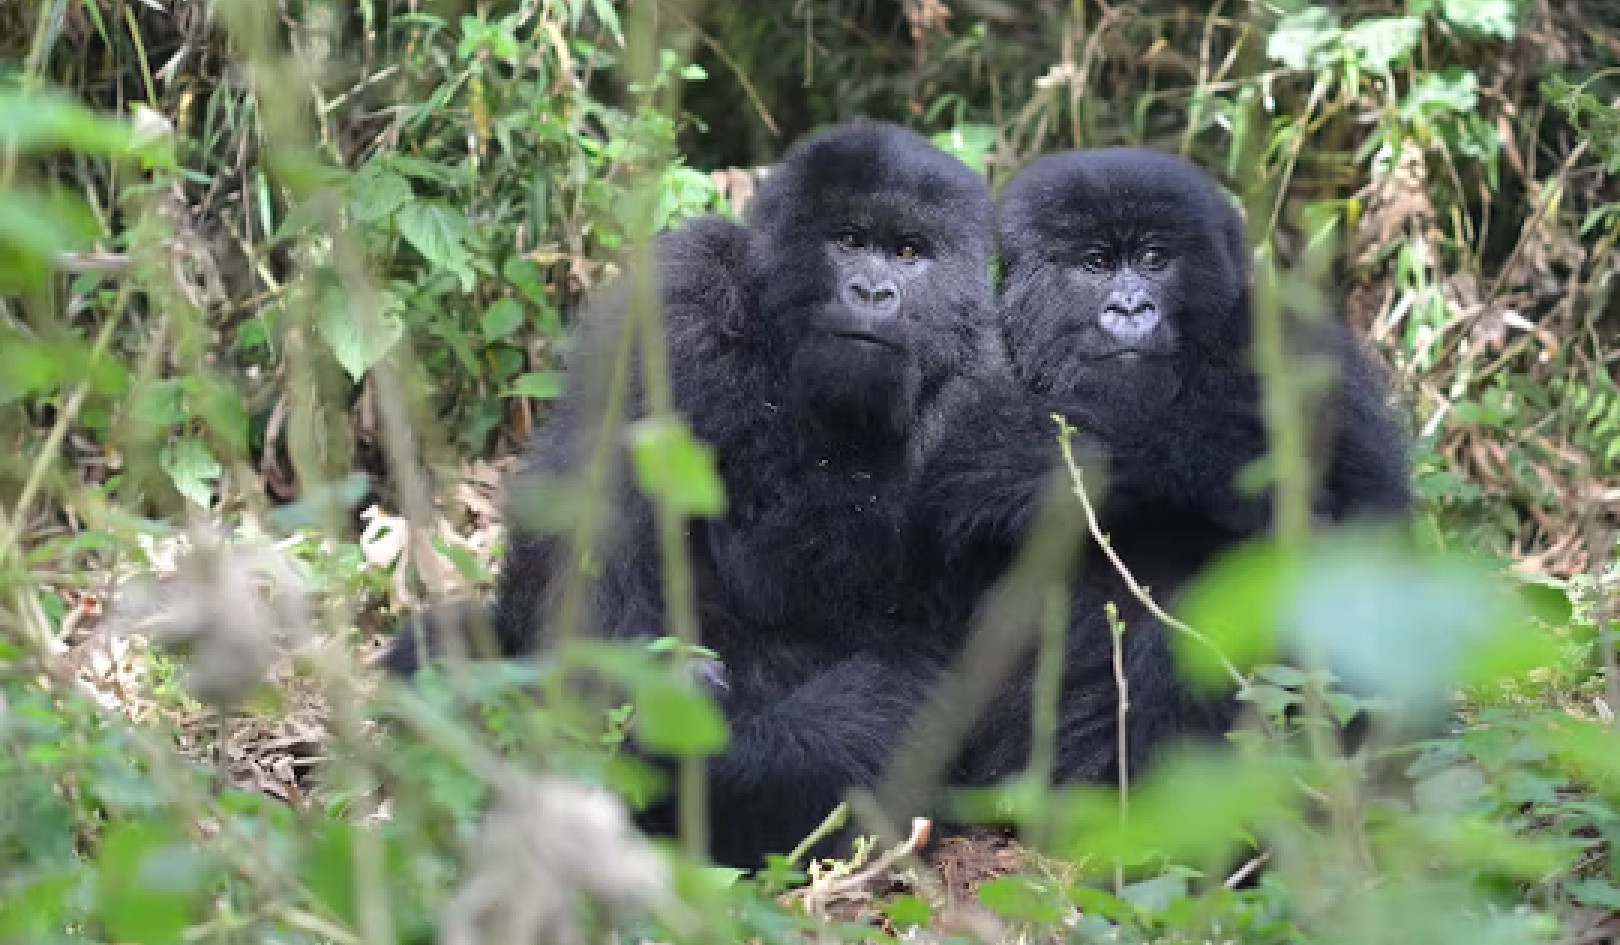 Trives i møte med motgang: Spenstige gorillaer avslører ledetråder om å overvinne ulykke i barndommen